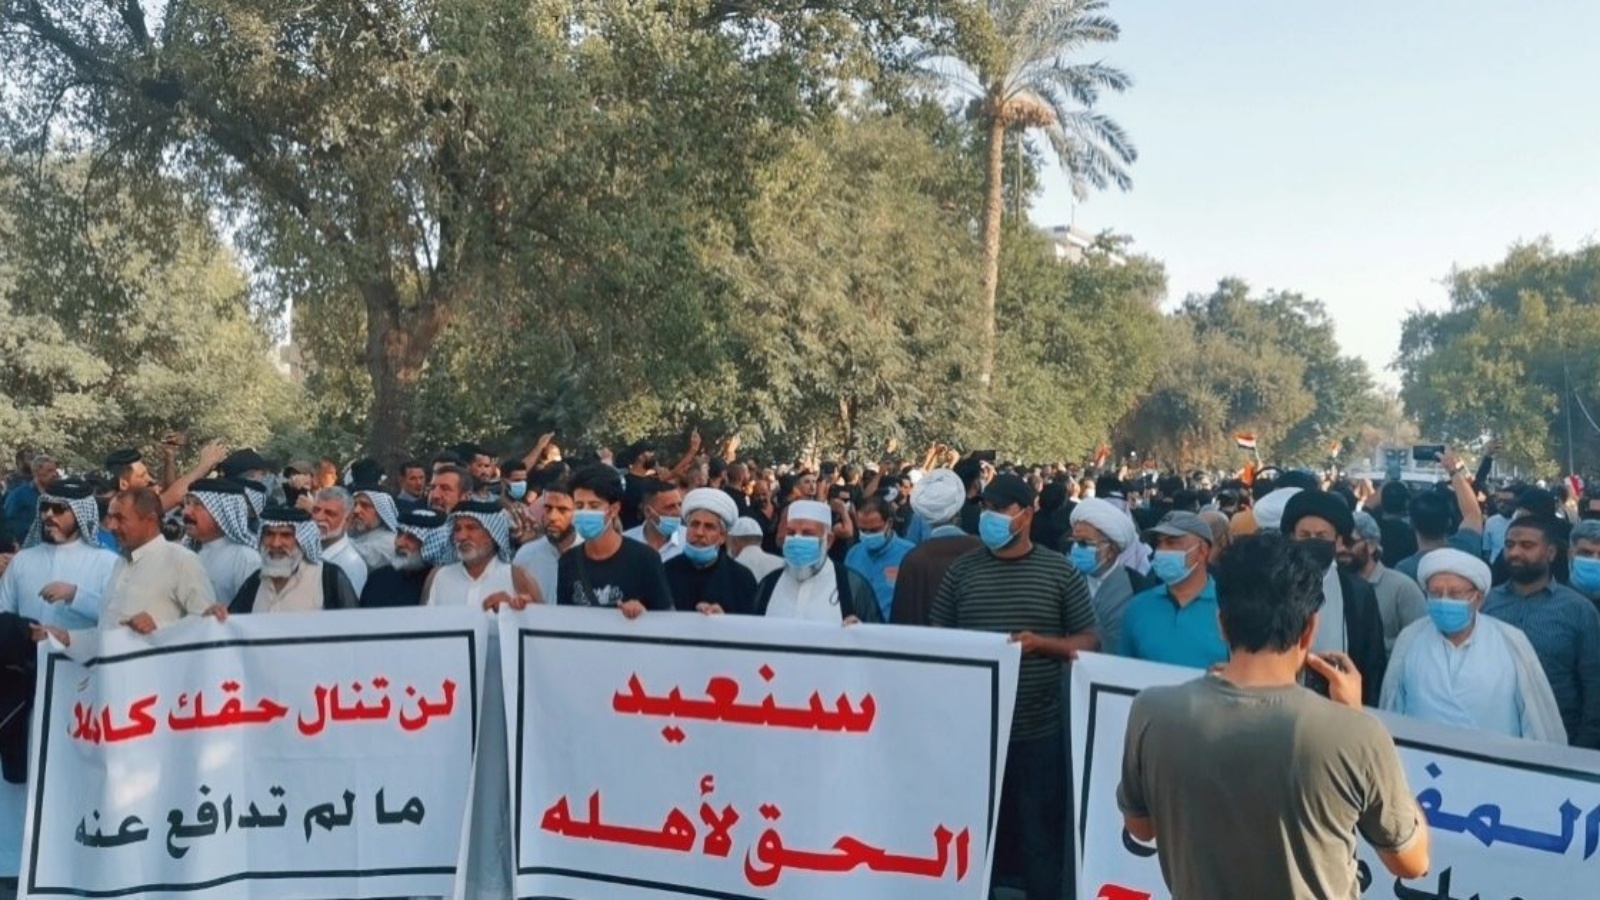 محتجون عراقيون ضد نتائج الانتخابات يعتصمون أمام المنطقة الخضراء في بغداد الأربعاء 20 تشرين الأول/ أكتوبر 2021. (الوكالة الوطنية العراقية)